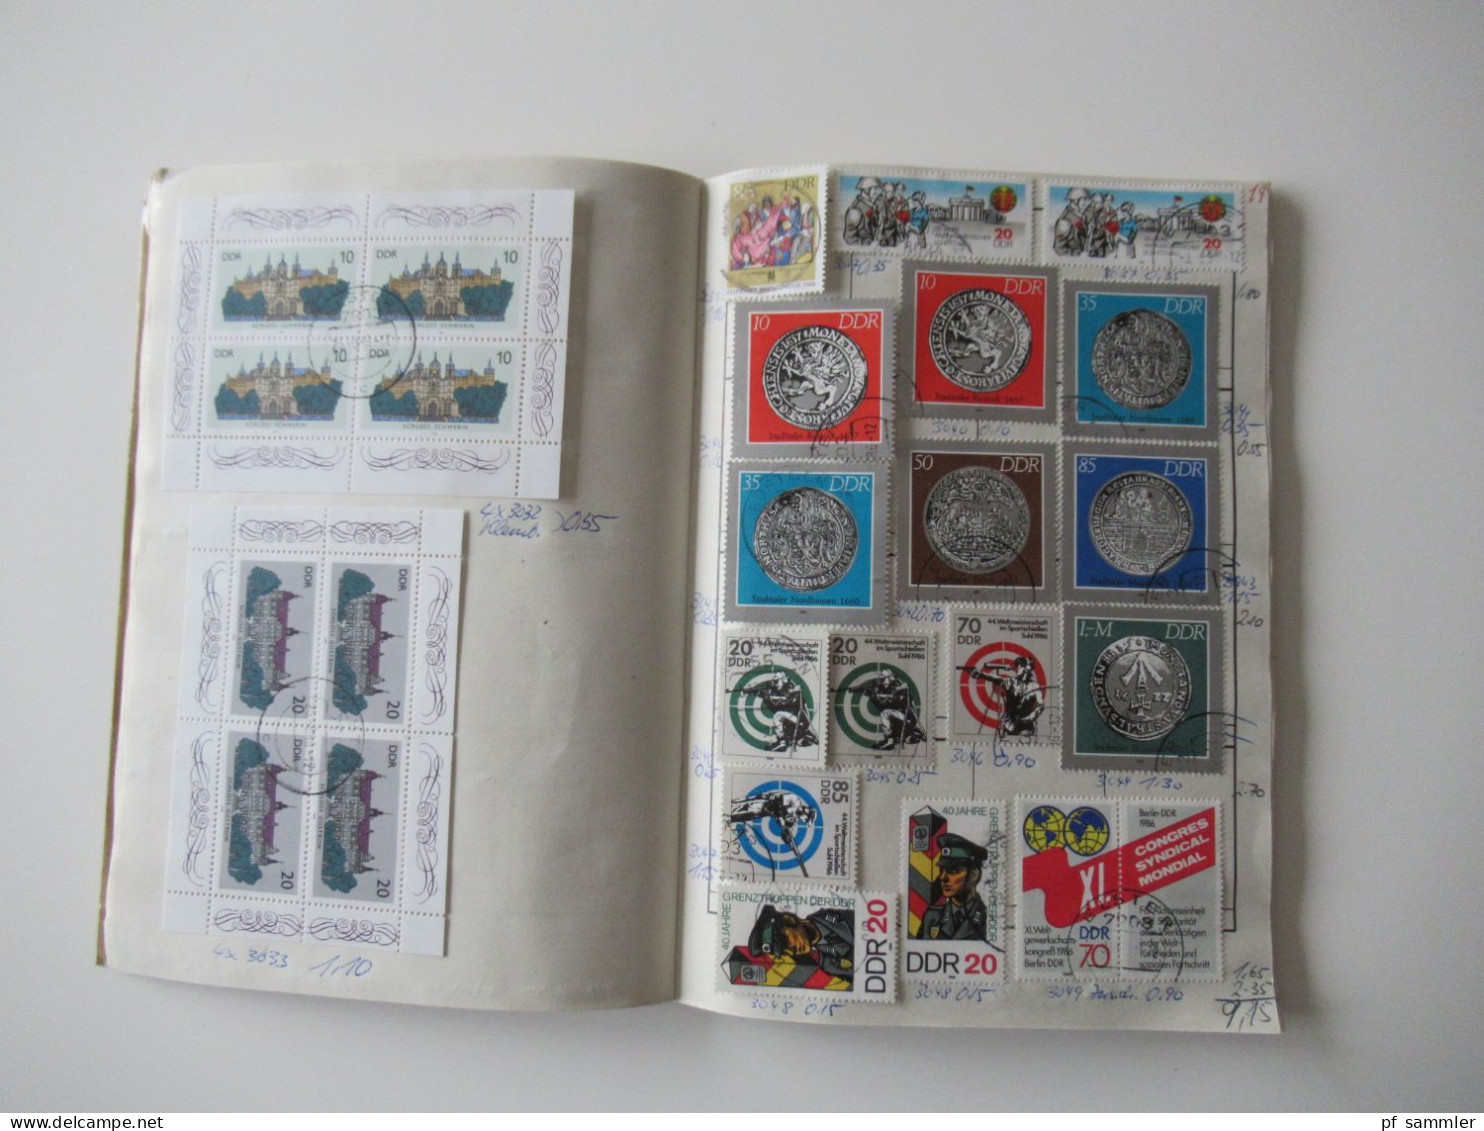 Sammlung / interessantes Auswahlheft DDR 1983 - 1989 viele gestempelte Marken /eventl. Fundgrube / viele Tagesstempel